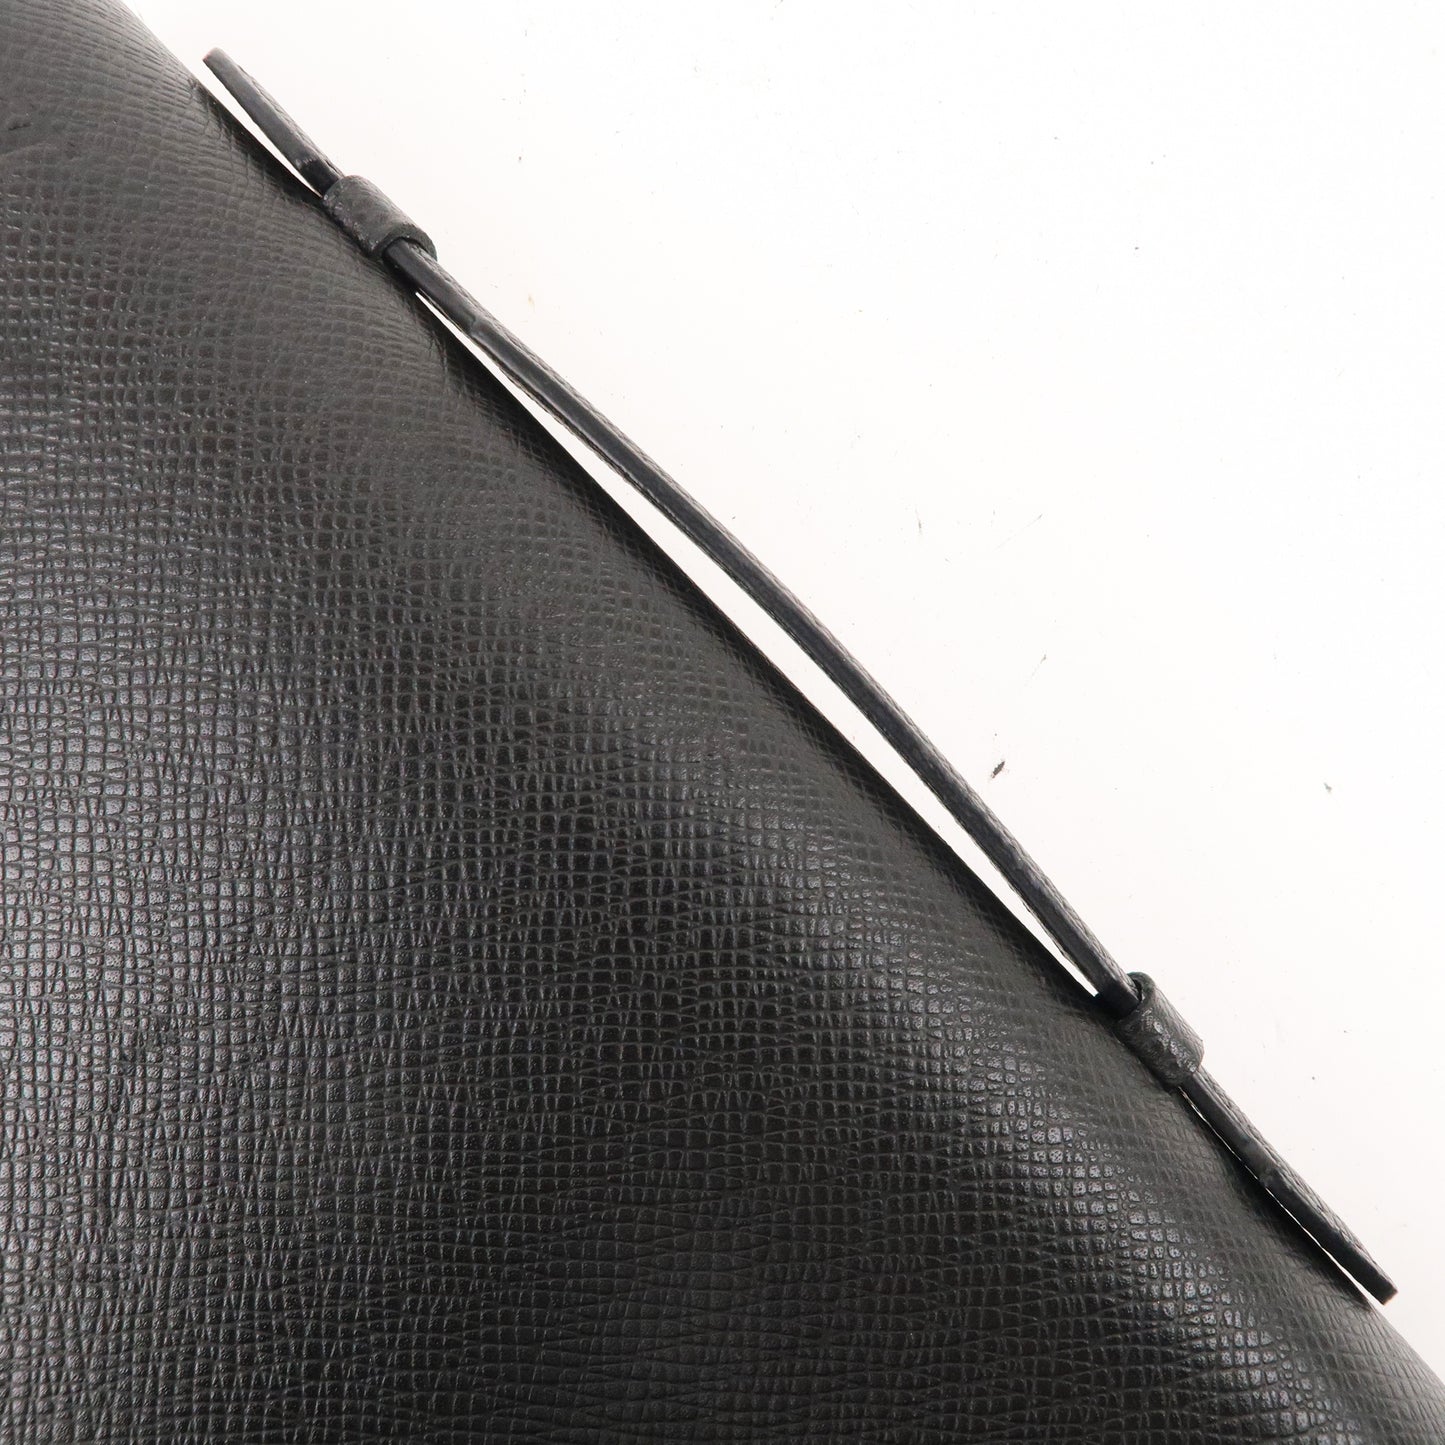 Louis Vuitton Taiga Zippy Wallet XL Organizer Ardoise M44275